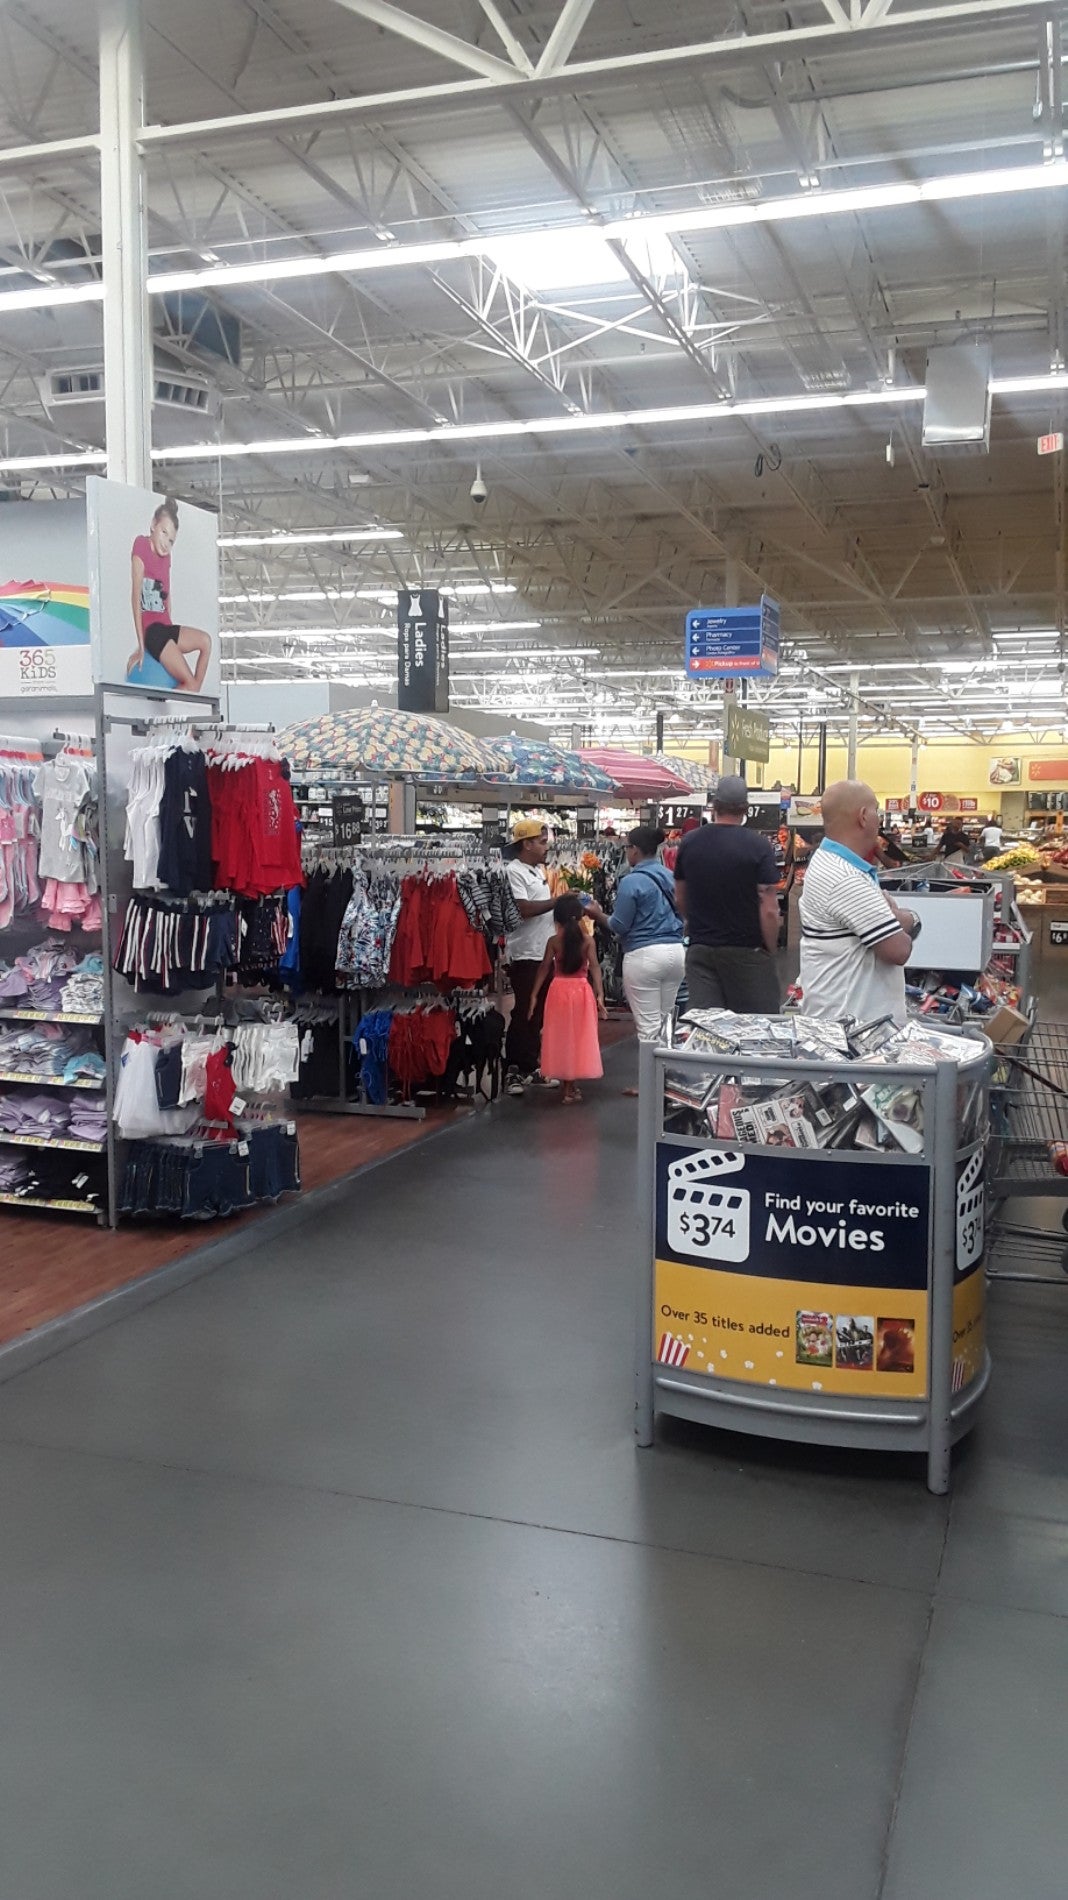 Walmart Supercenter, 8990 Turkey Lake Rd, Orlando, FL, Department Stores -  MapQuest